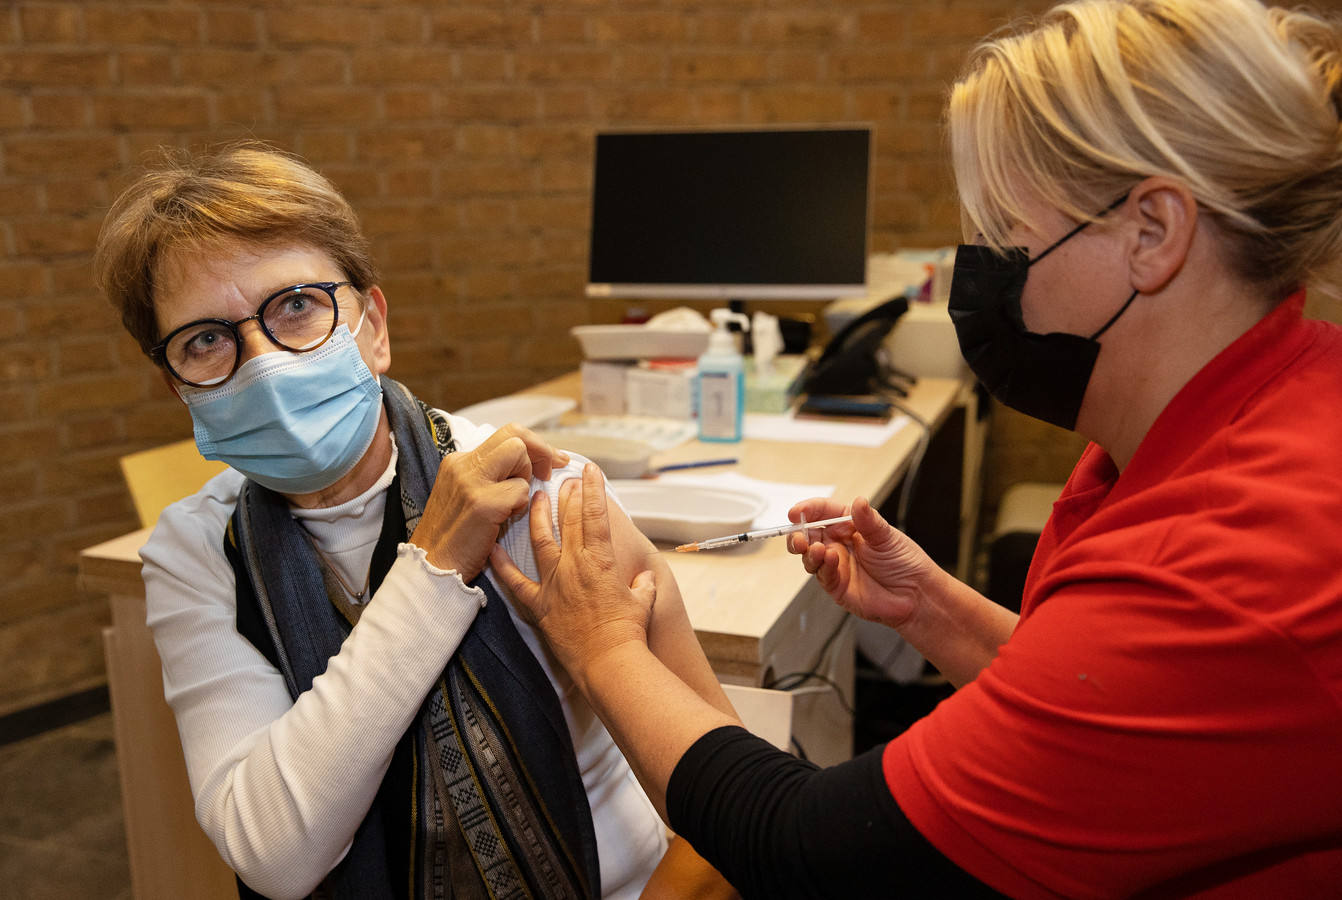 Enkele tientallen mensen kwamen naar de tijdelijke prikpoli van de GGD in Gezondheidscentrum Leonardus in Helmond om zich te laten vaccineren.